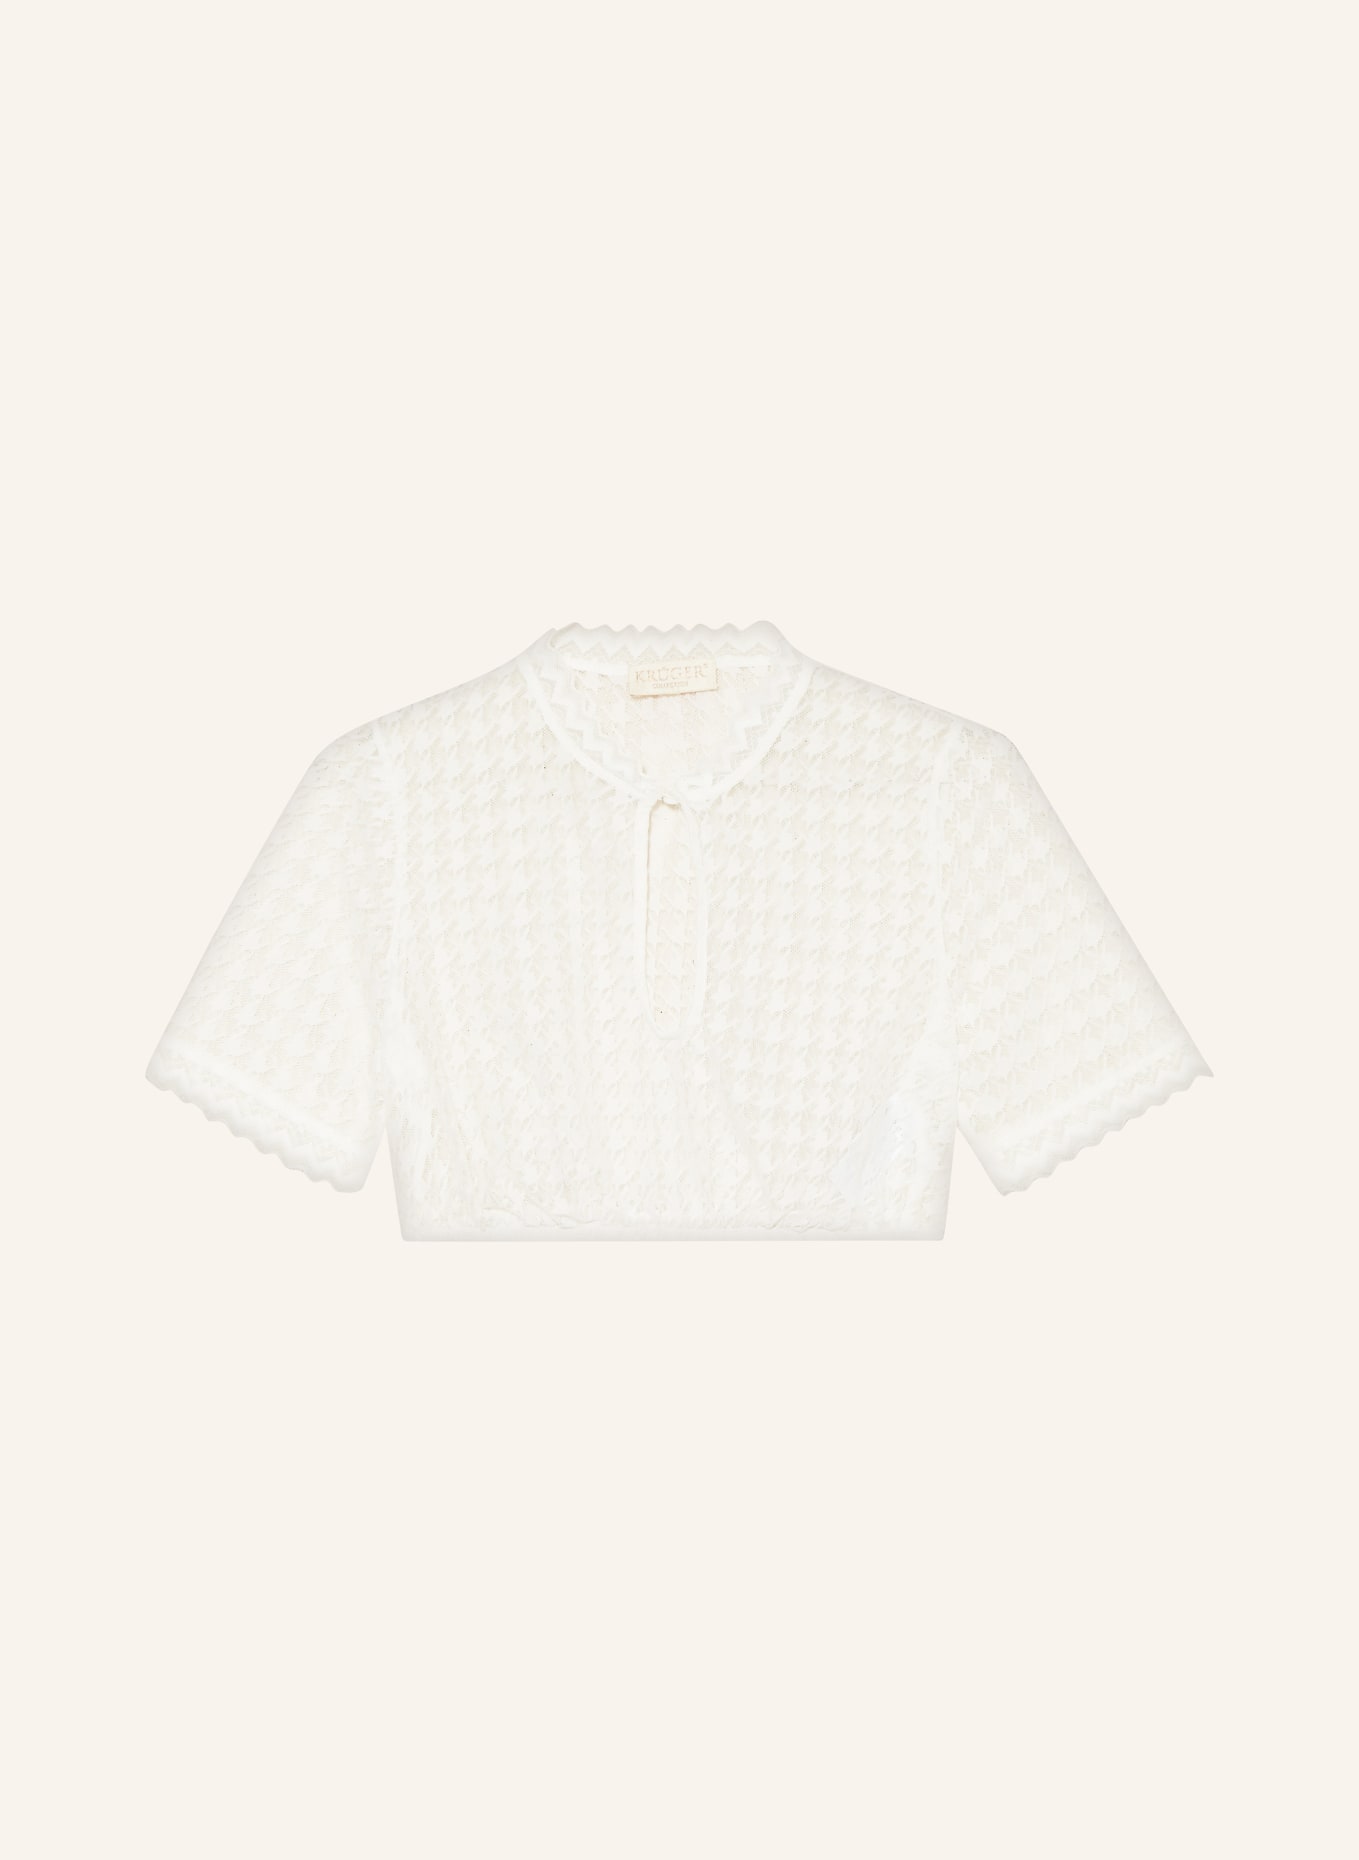 KRÜGER Dirndl blouse, Color: CREAM (Image 1)